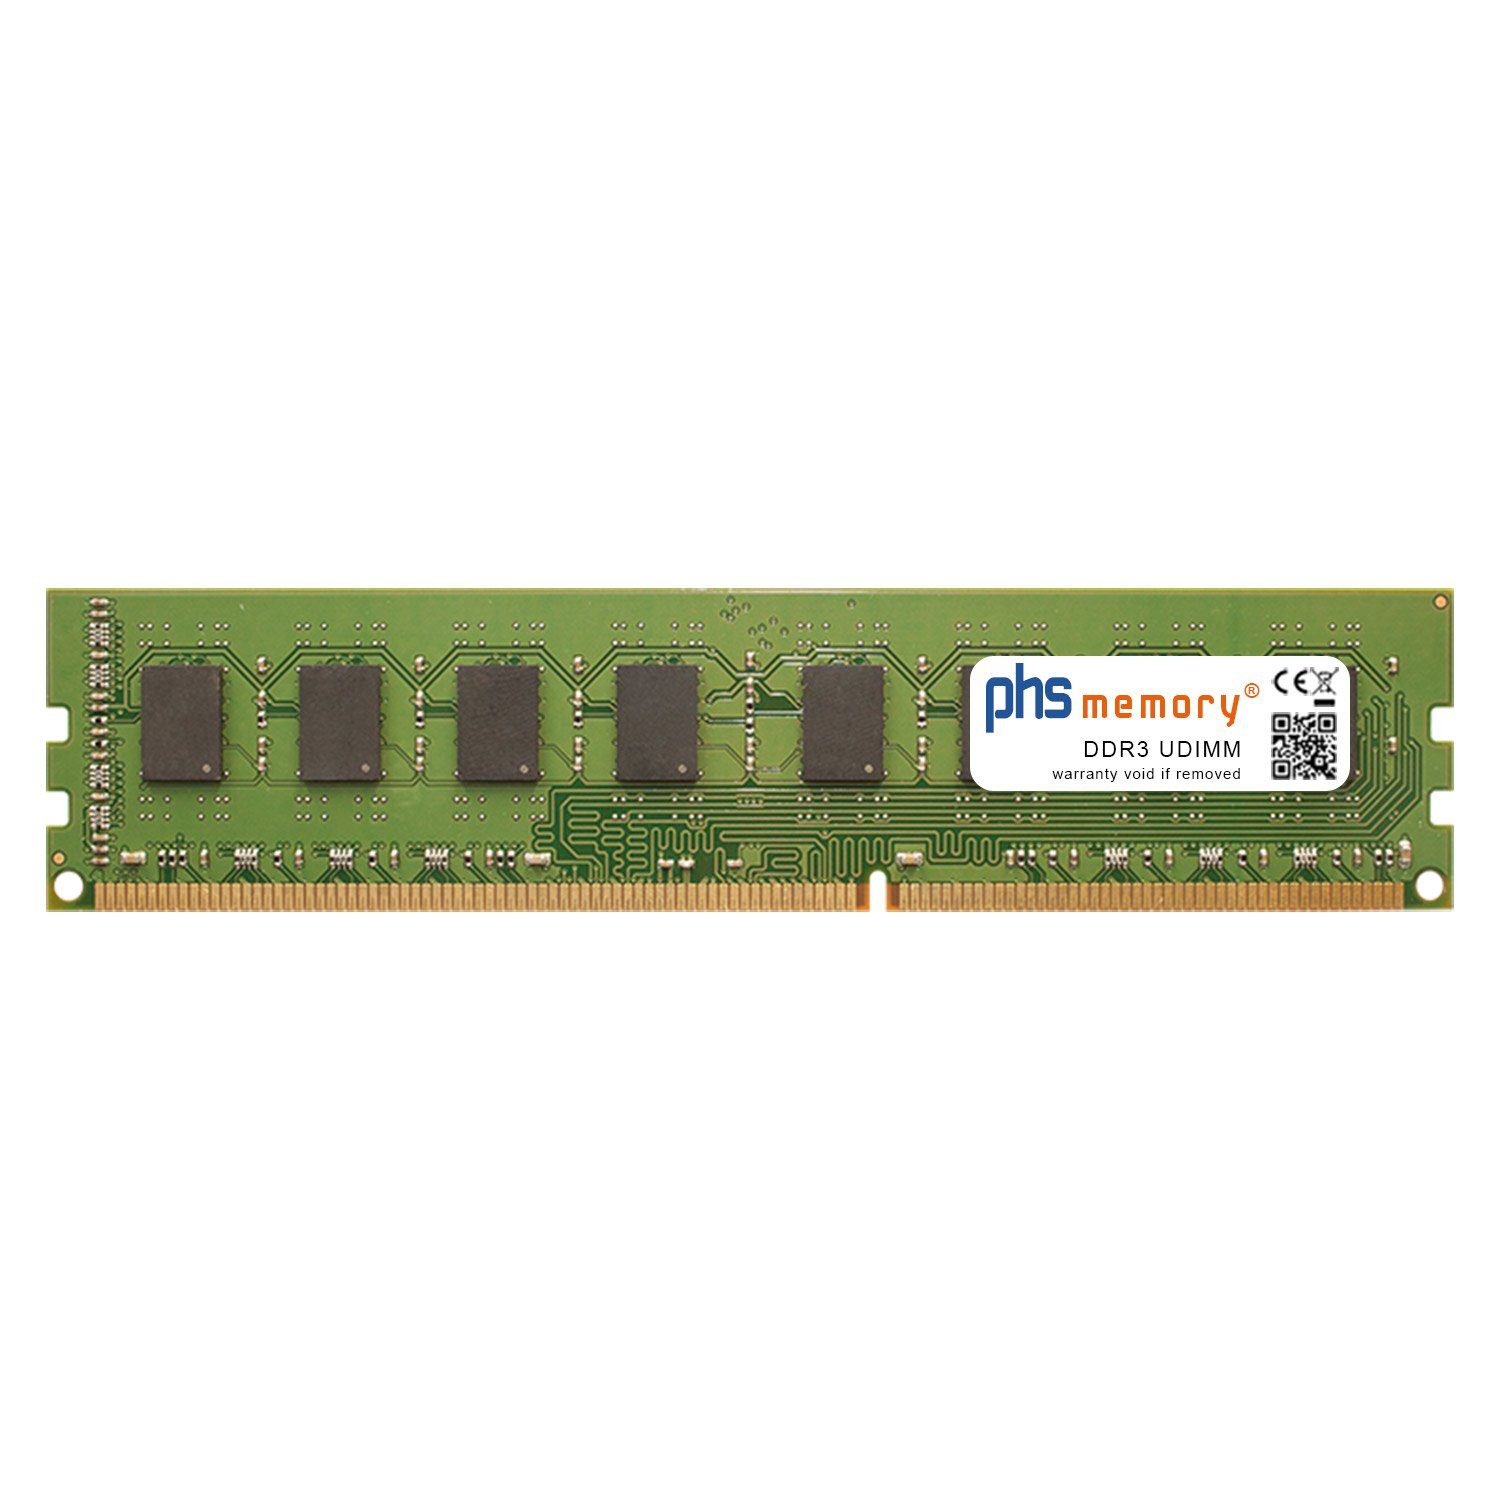 PHS-memory RAM für ASRock Z97 Extreme9 Arbeitsspeicher